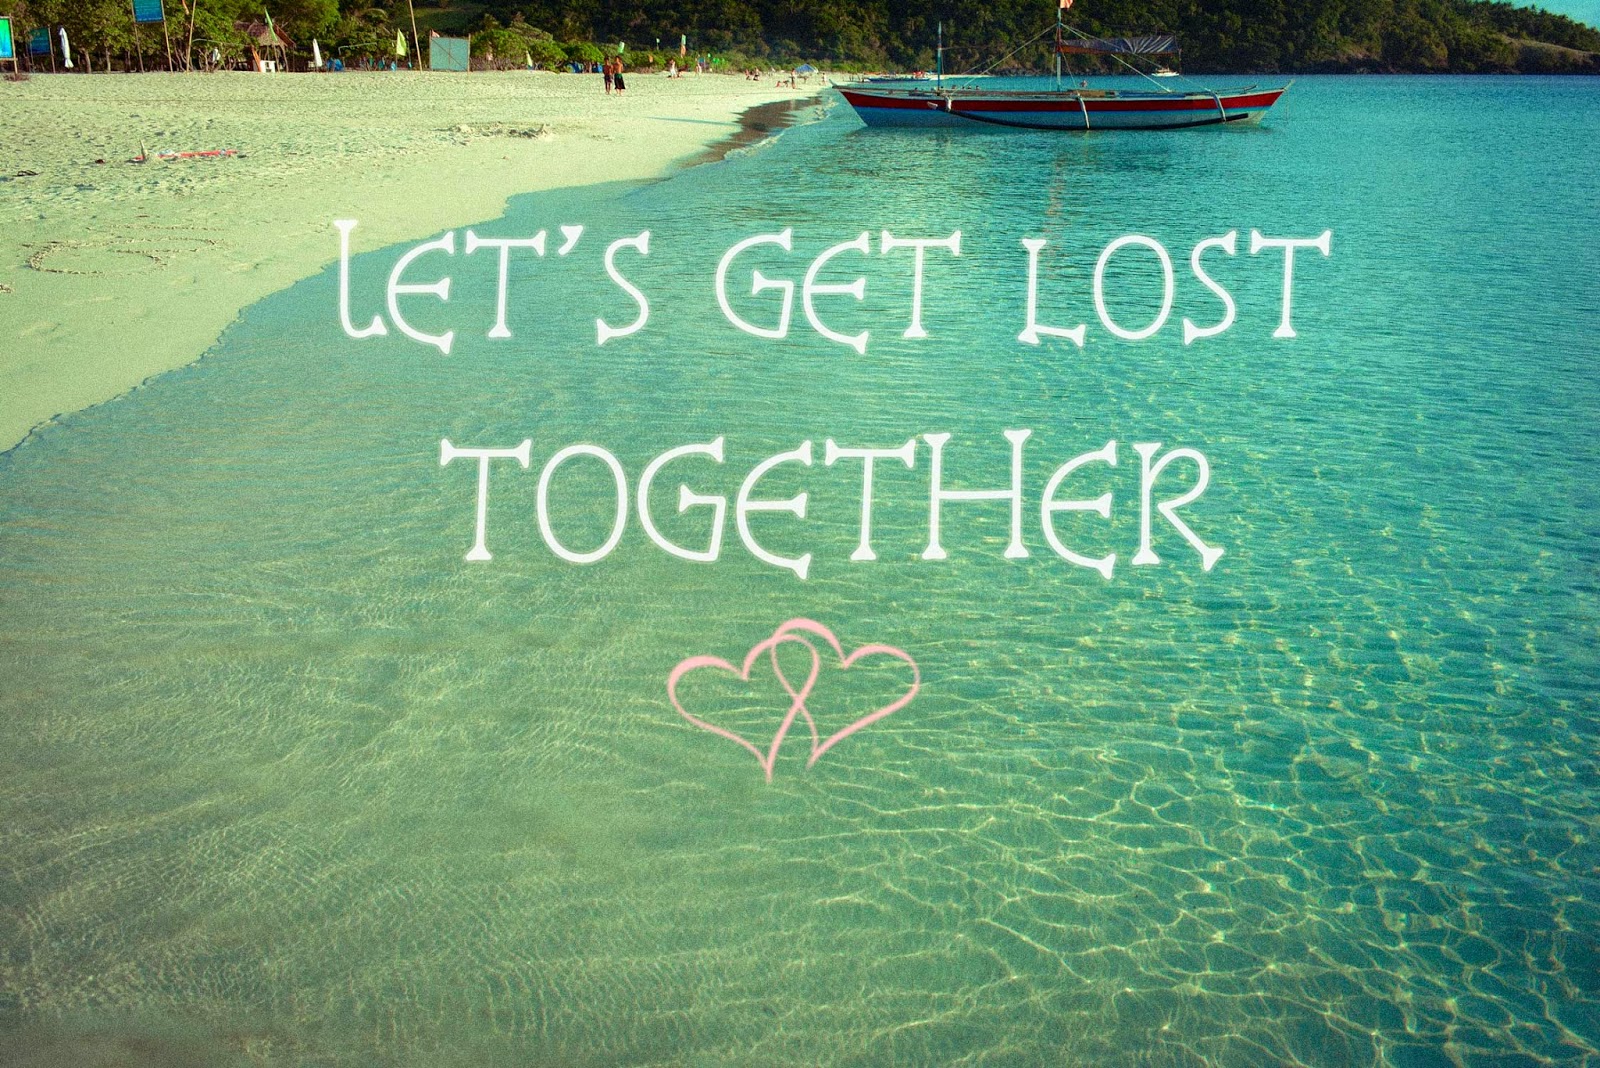 Lets get away. Let's get Lost. Let's Travel together. Lets get Lost together футболка. Открытка встретить вместе Let's get together.